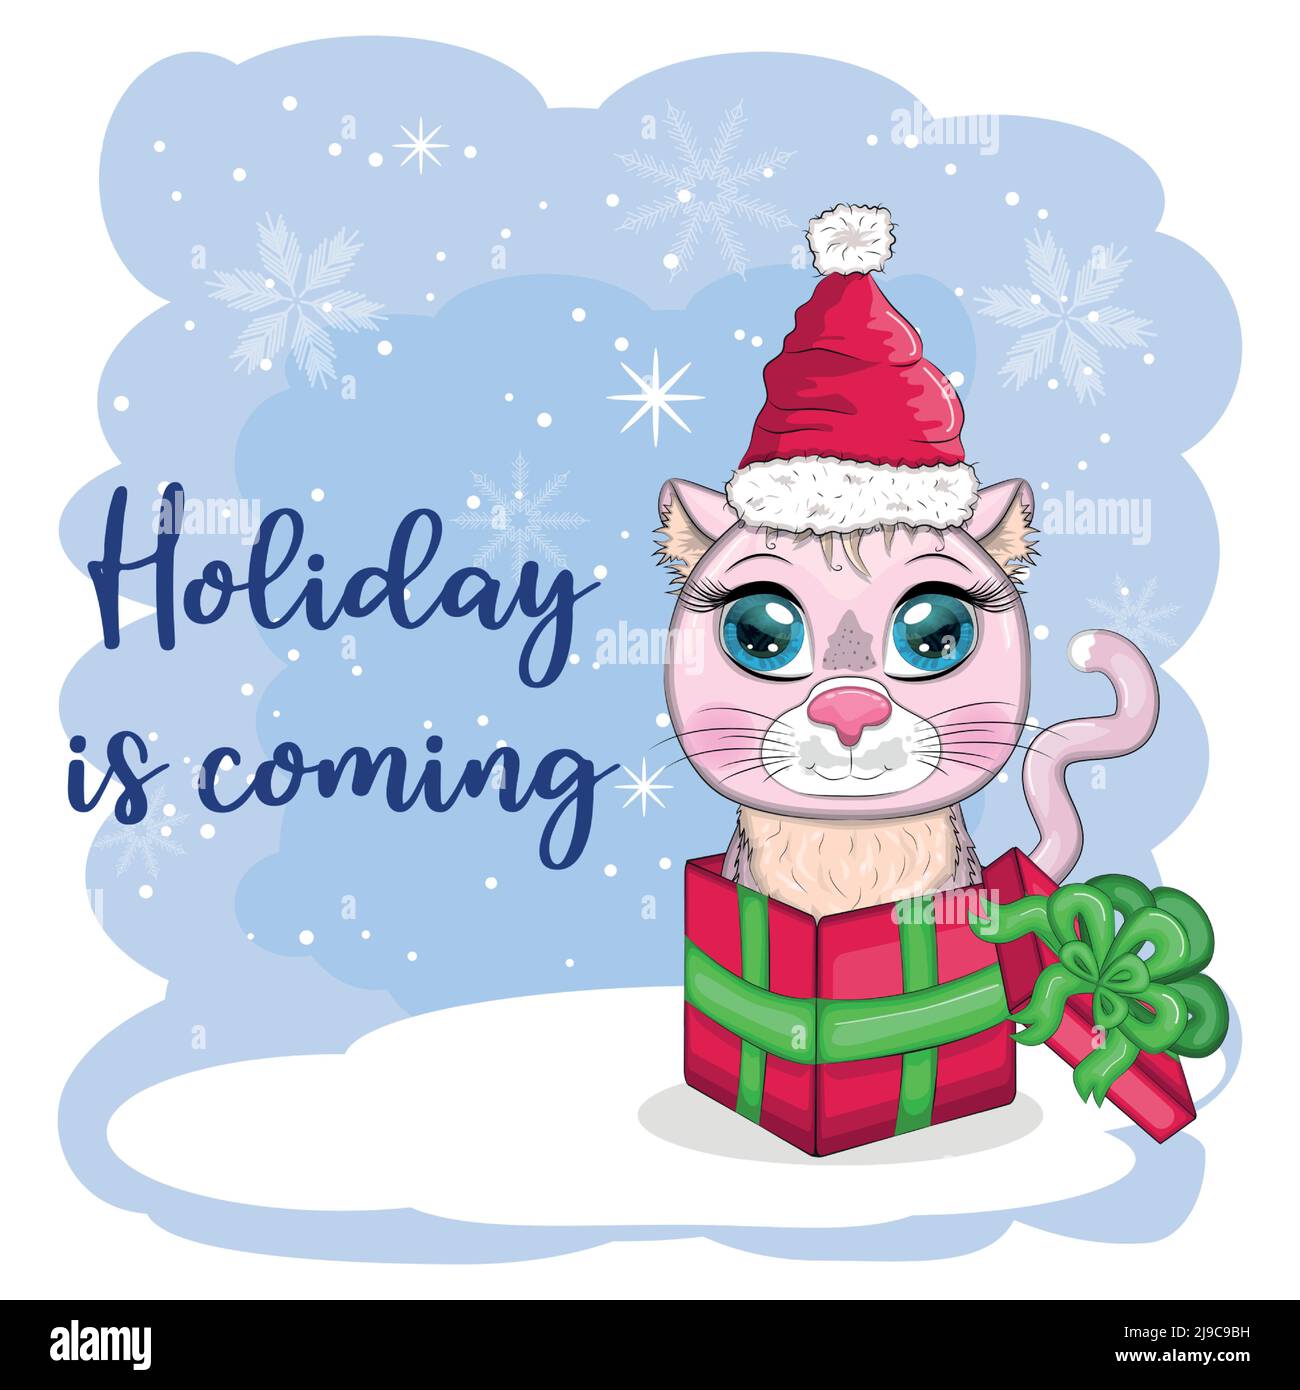 Cartoon cat Santa hat: Bạn thích những hình ảnh vui nhộn về mèo đáng yêu? Hãy xem những hình ảnh về mèo đội mũ Noel dễ thương nhất. Với những đường nét mềm mại và màu sắc tươi sáng, những bức tranh này sẽ khiến bạn cười thật tươi và đầy hạnh phúc.